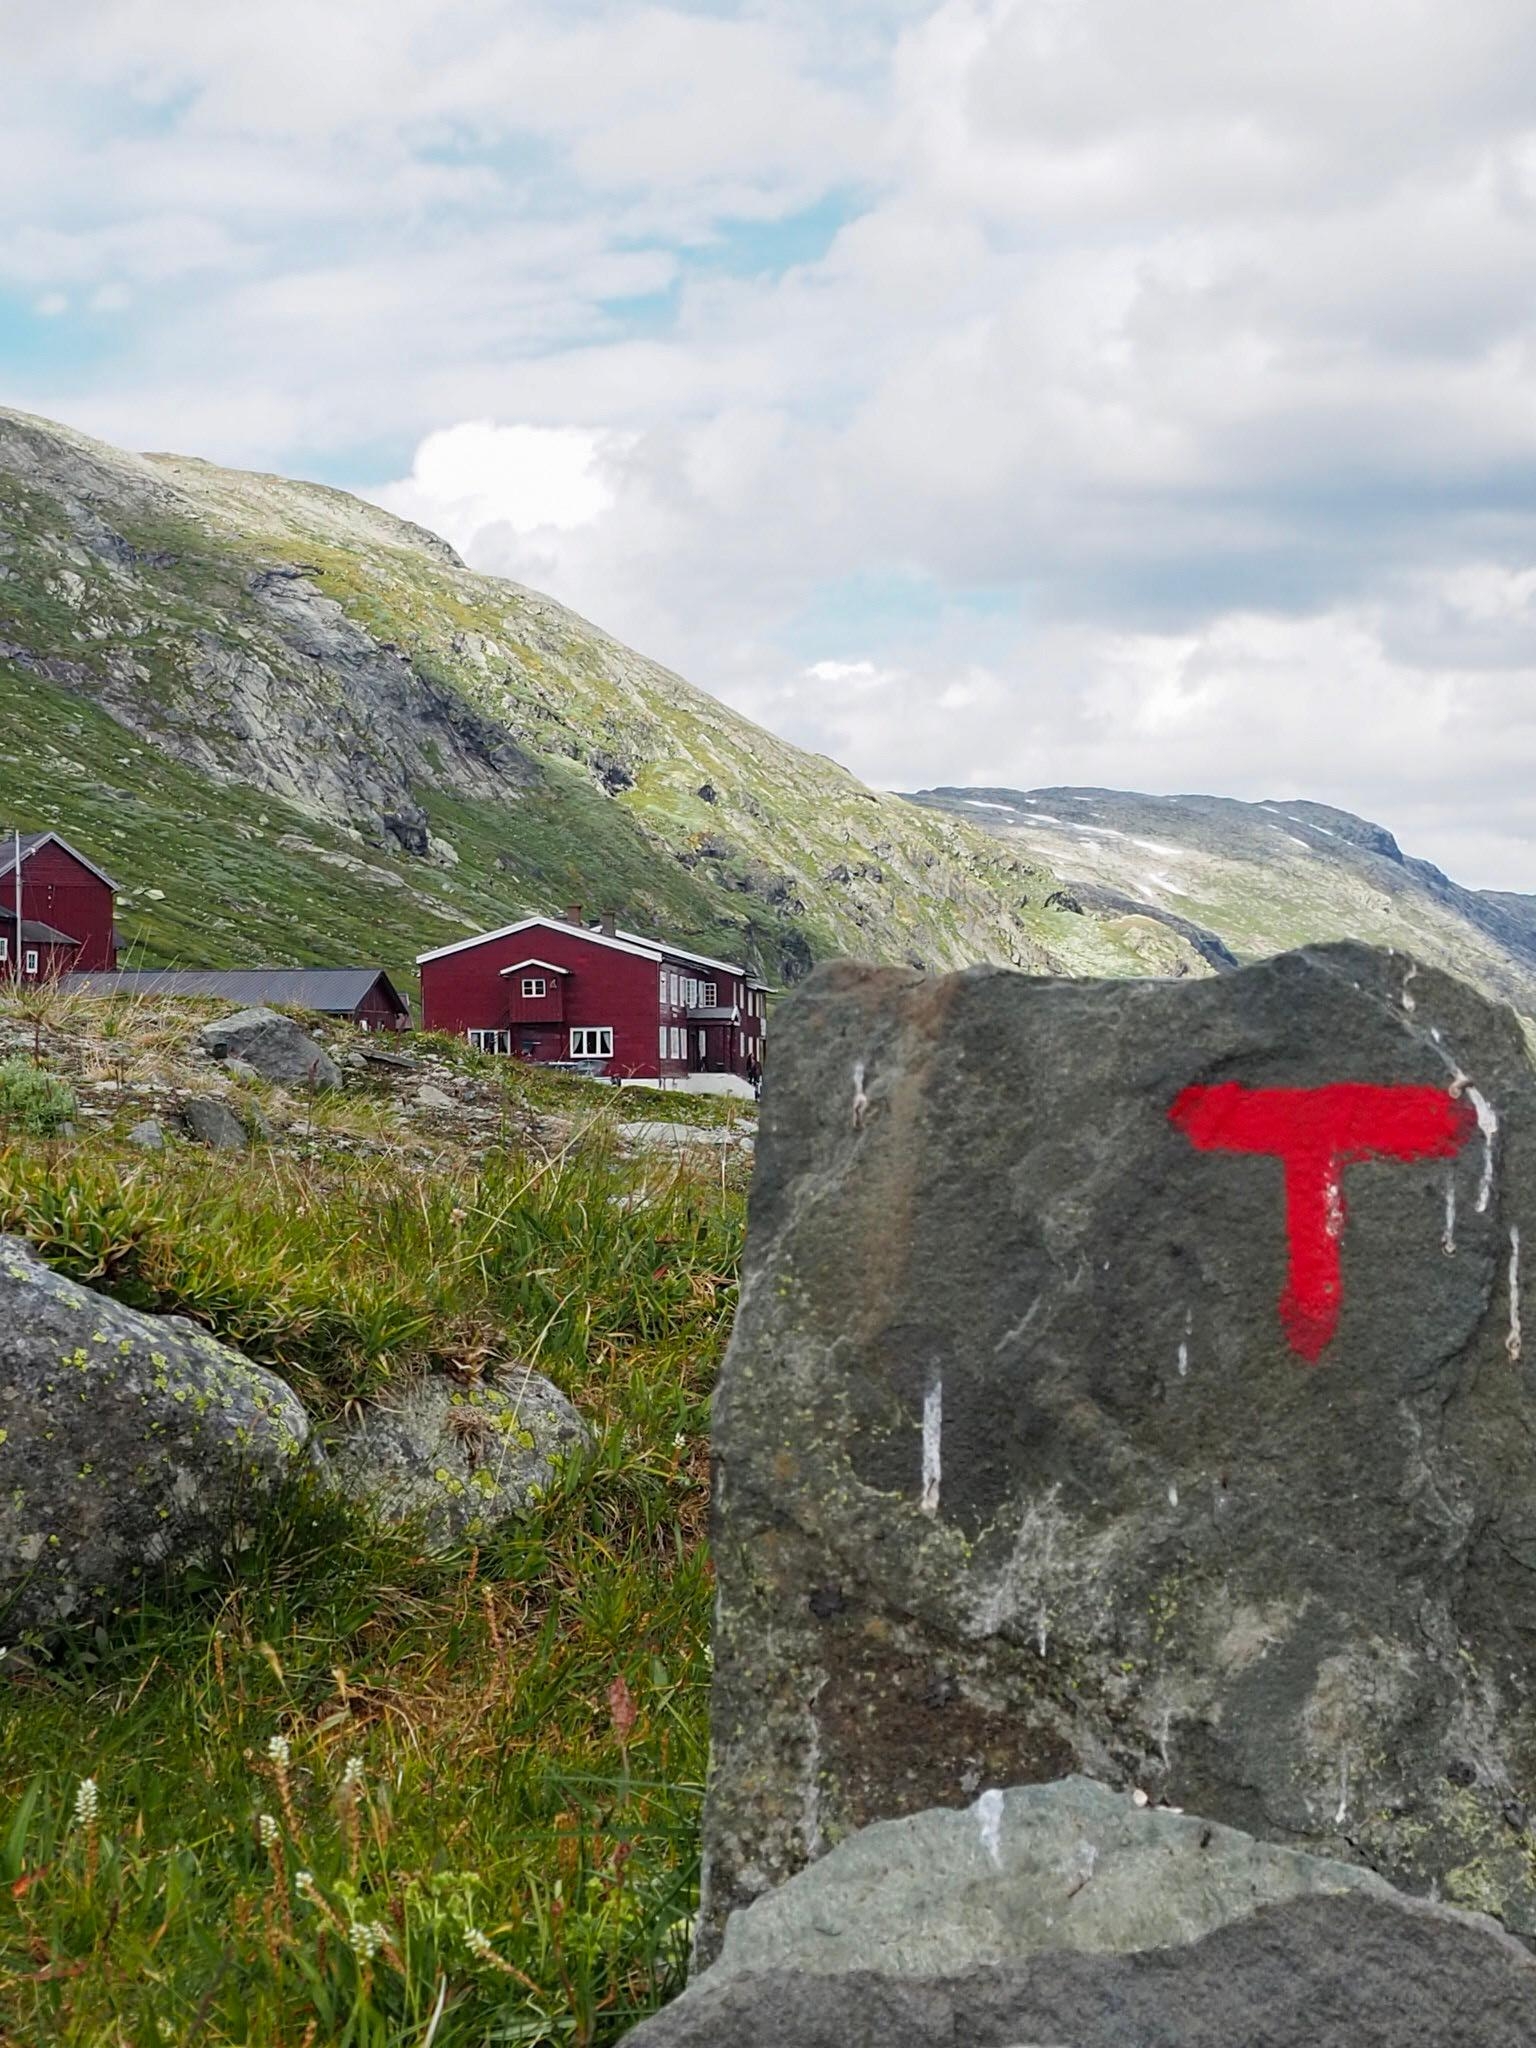 #wandern in #norwegen
#travelchallenge #skandinavien #fernweh 